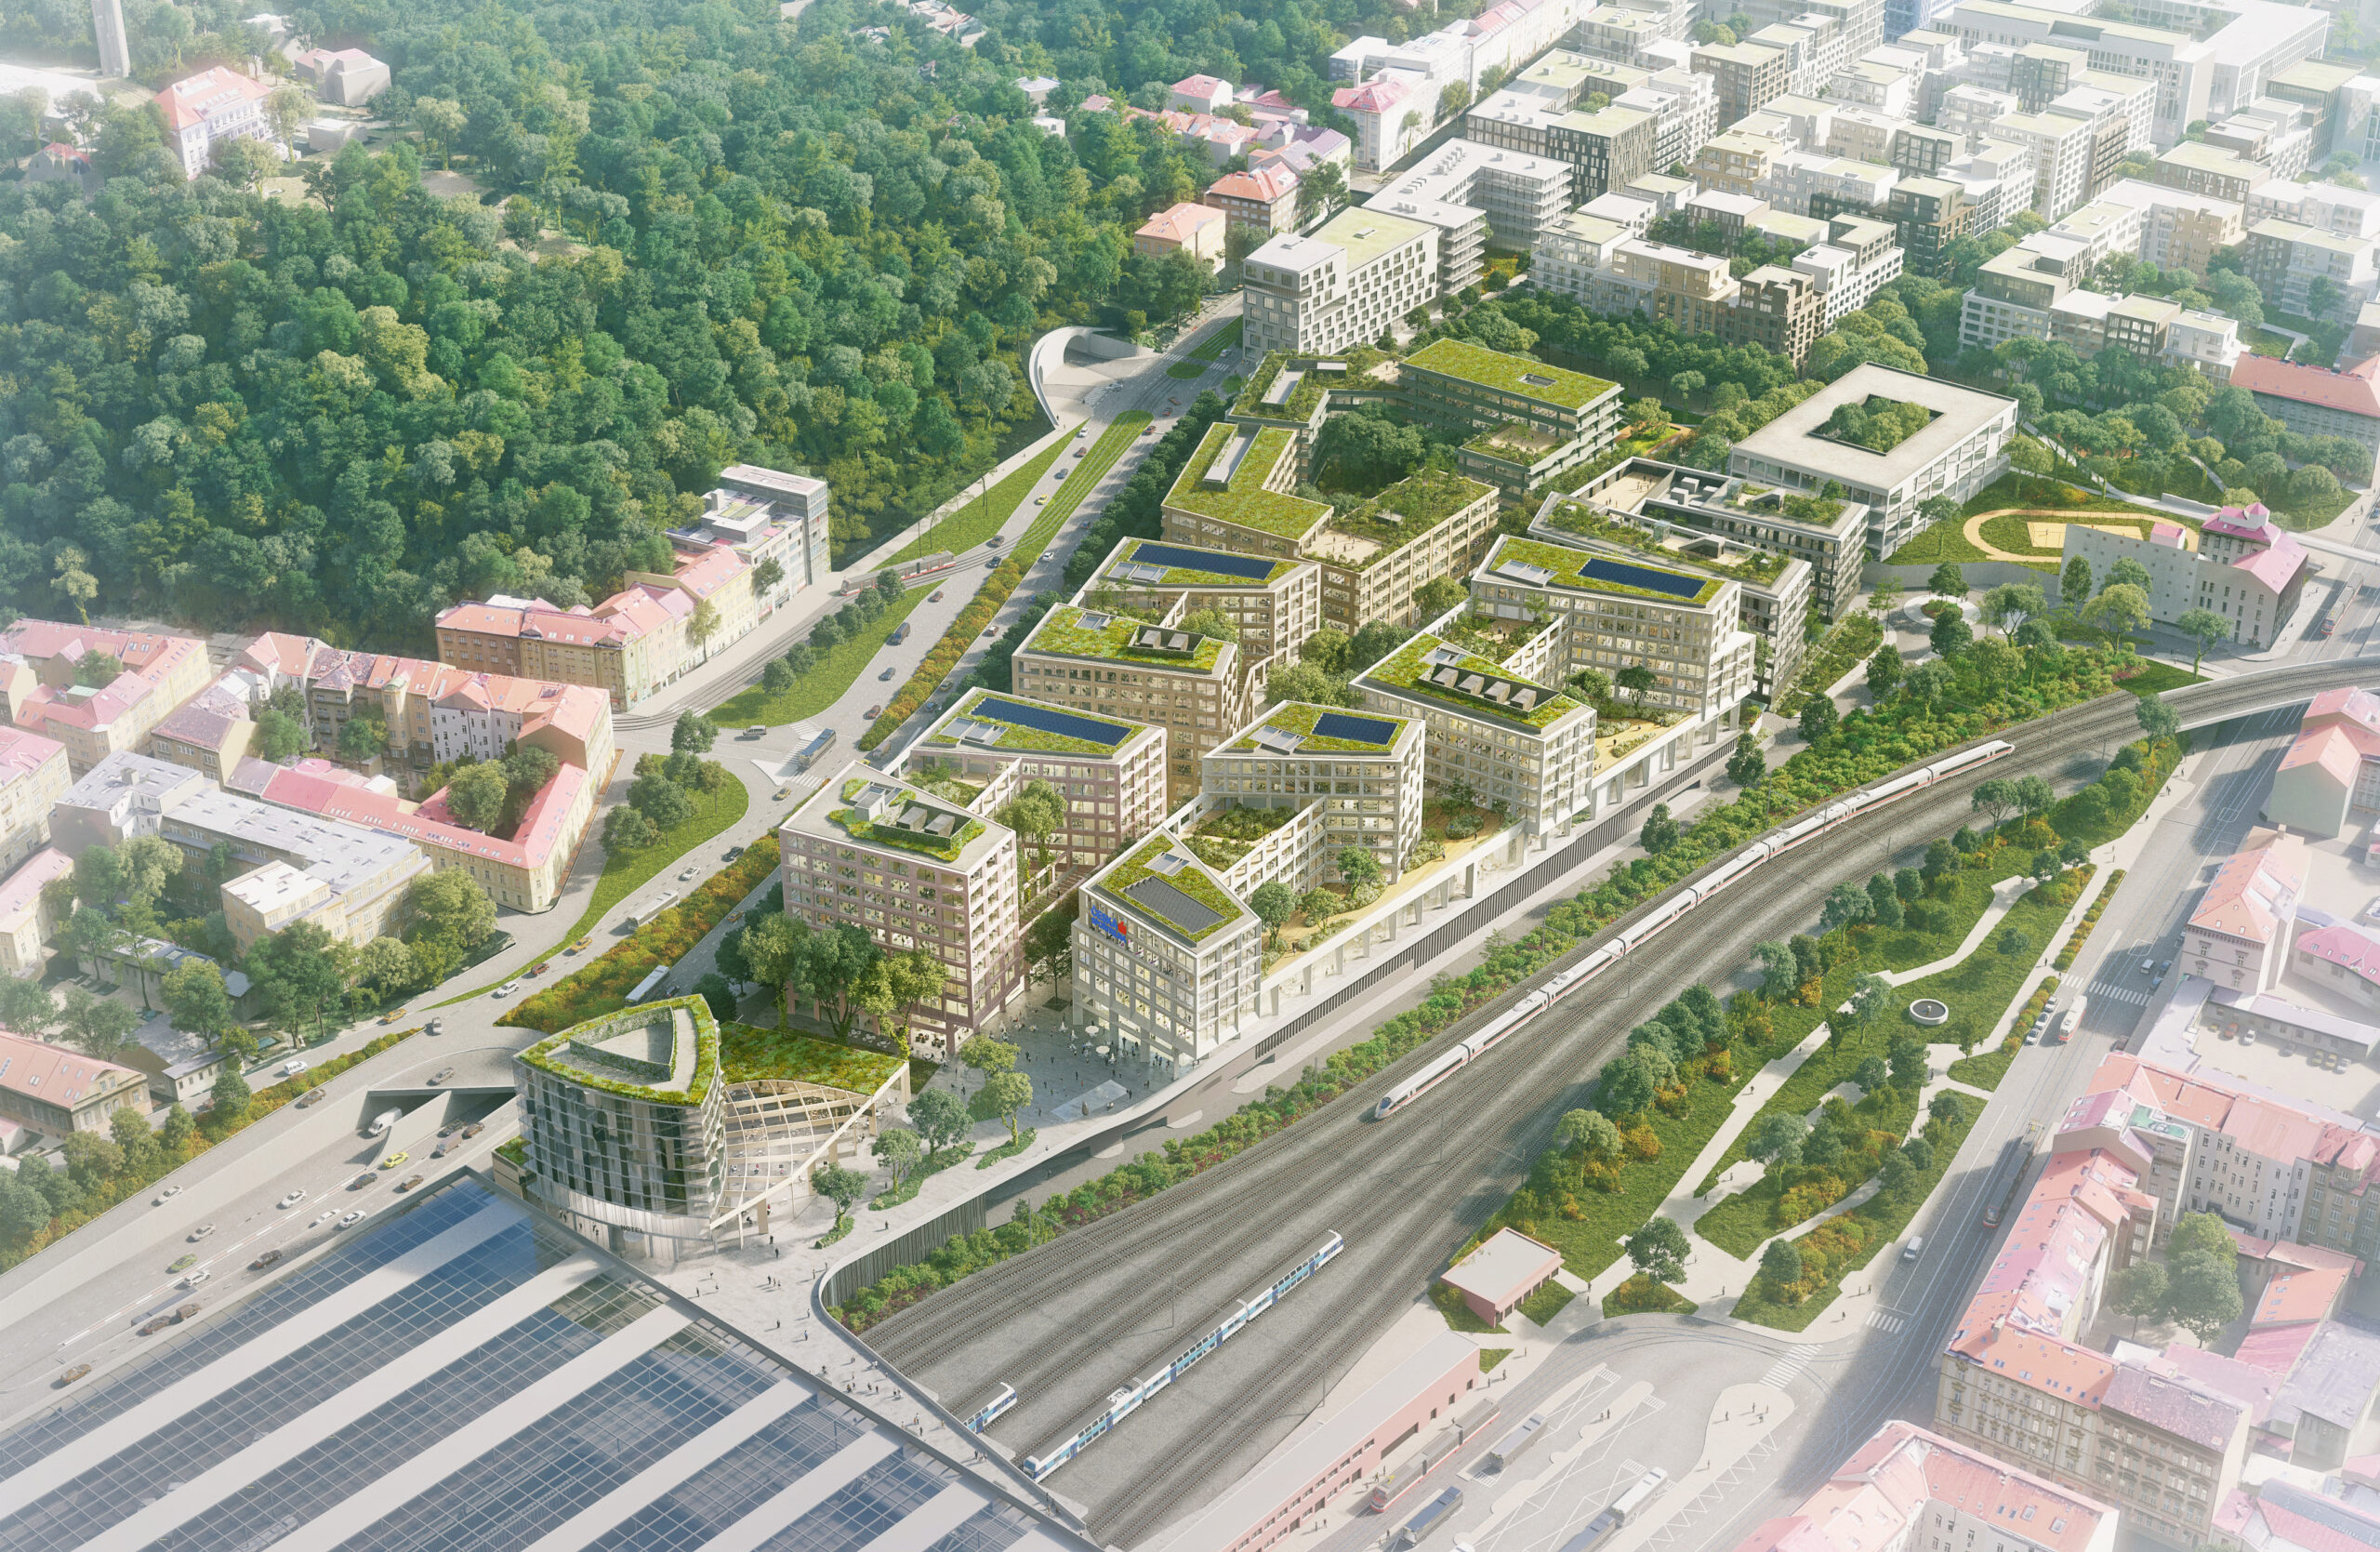 Urban masterplan by Baumschlager Eberle Architekten and Pavel Hnilička Architects+Planners